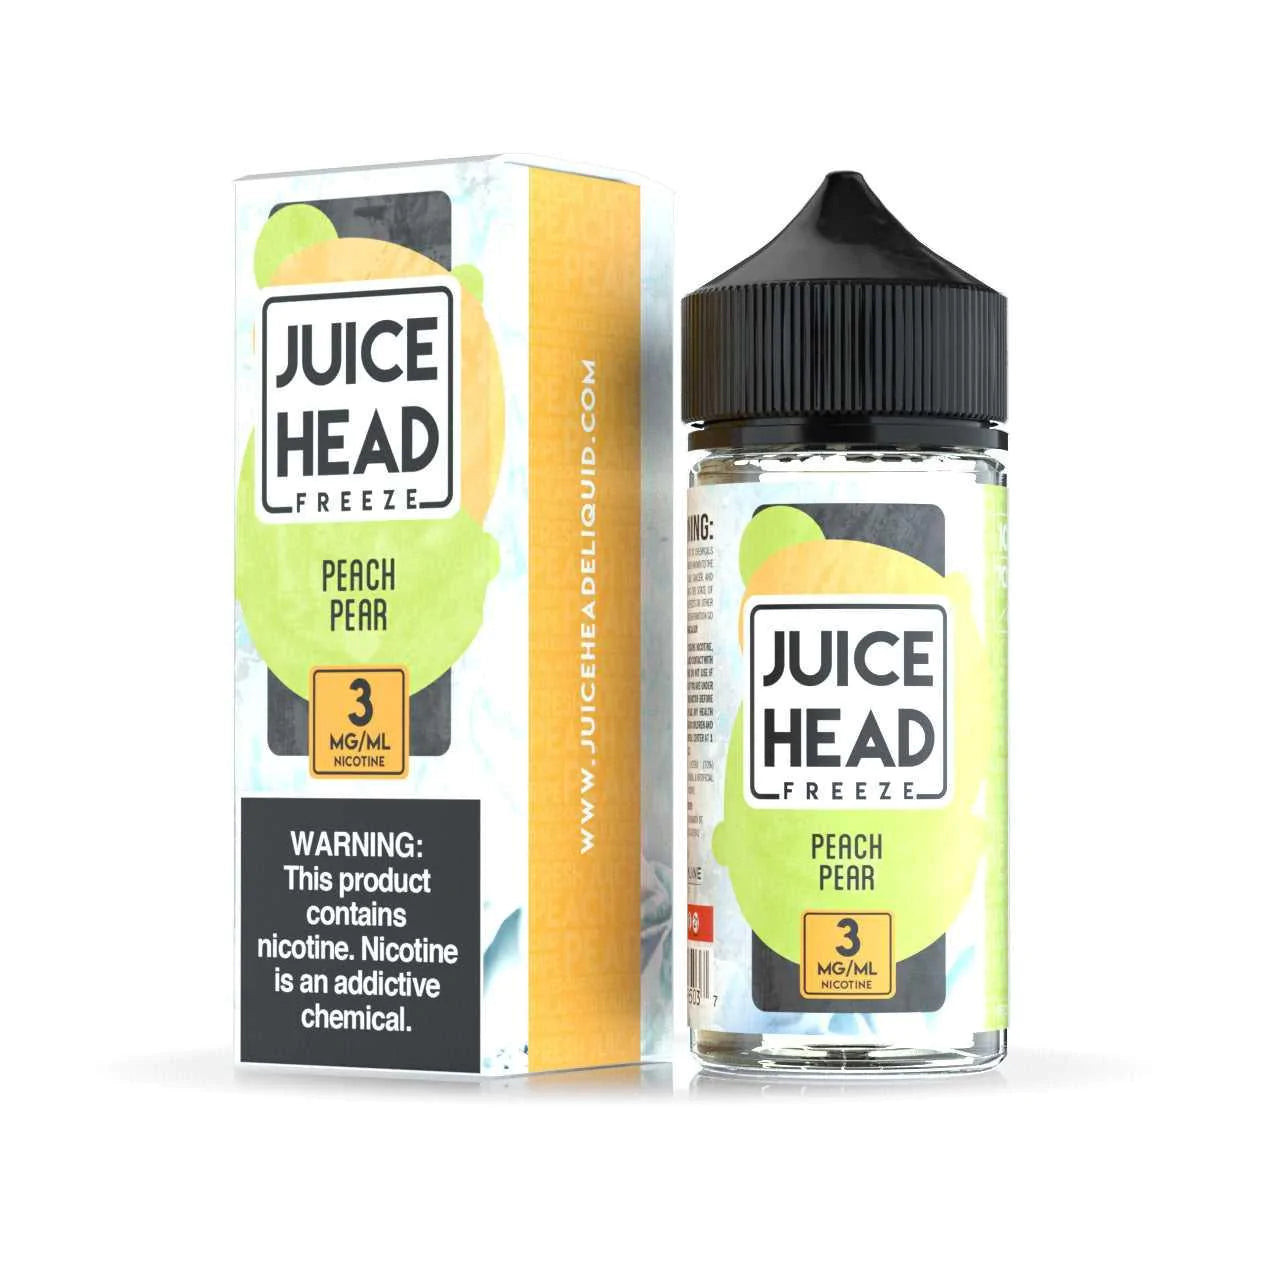 Juice Head Freeze: Peach Pear